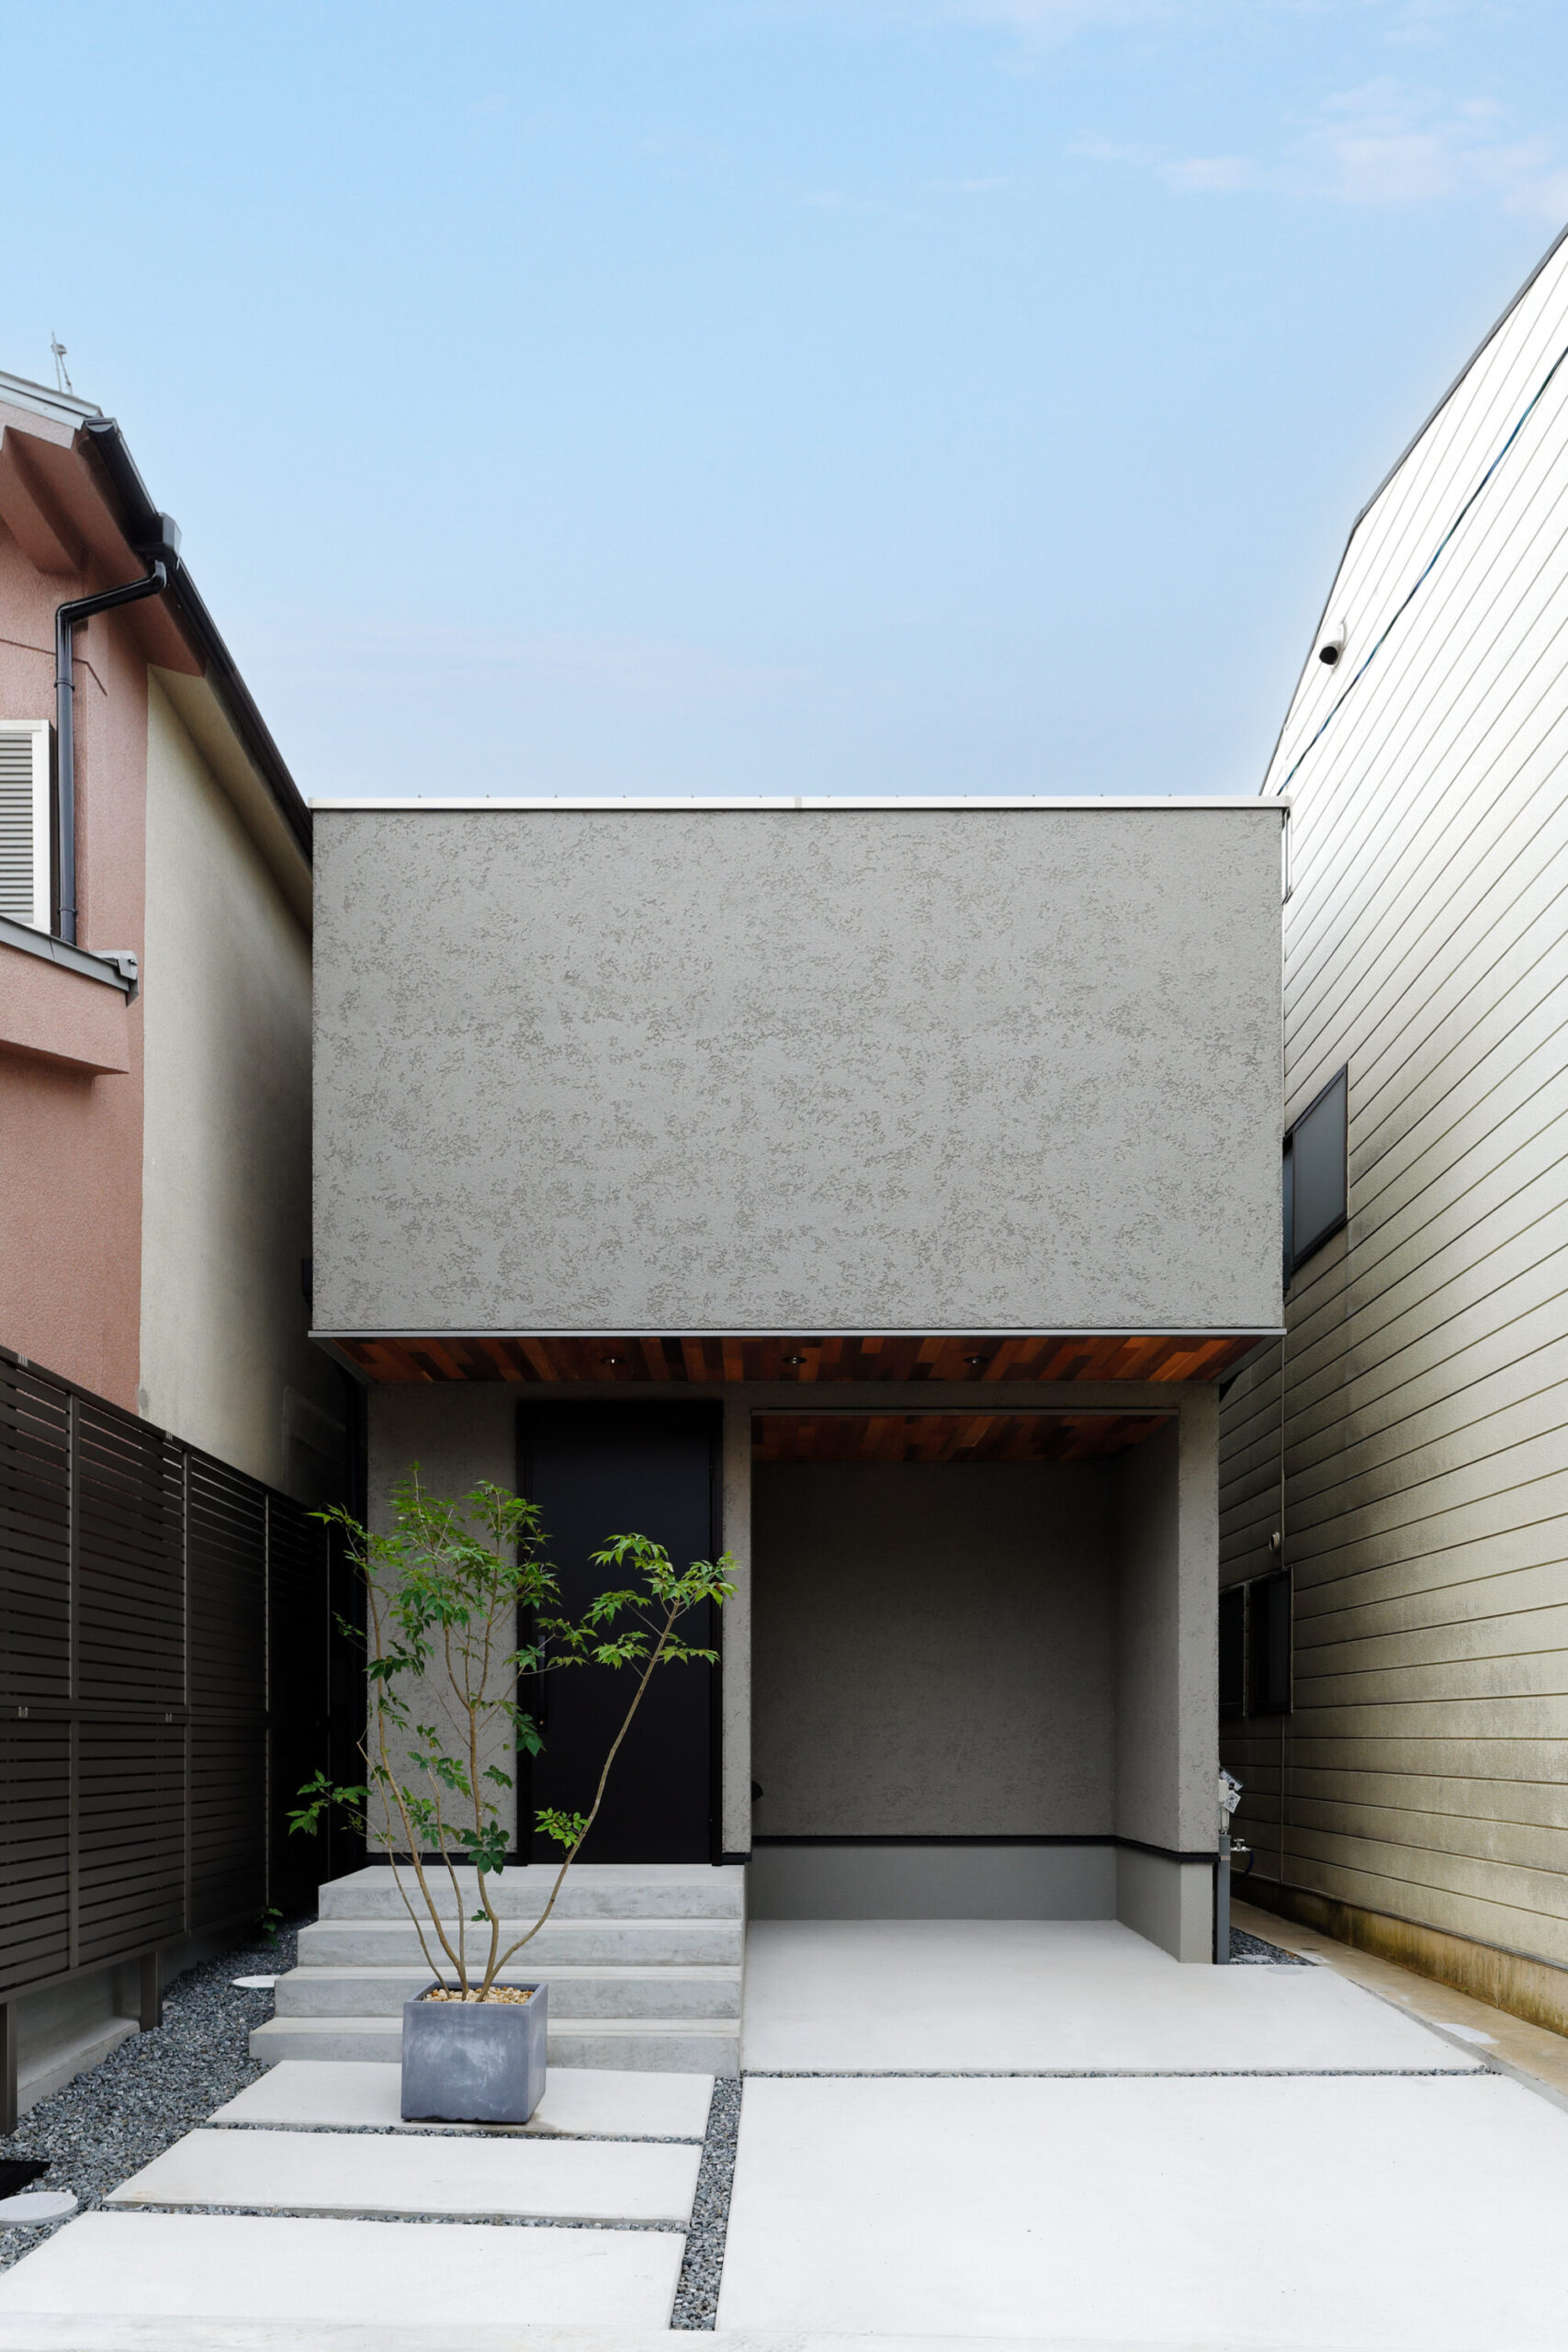 【予約制見学会】京都の住宅街に建つ 17坪のコンパクトハウス